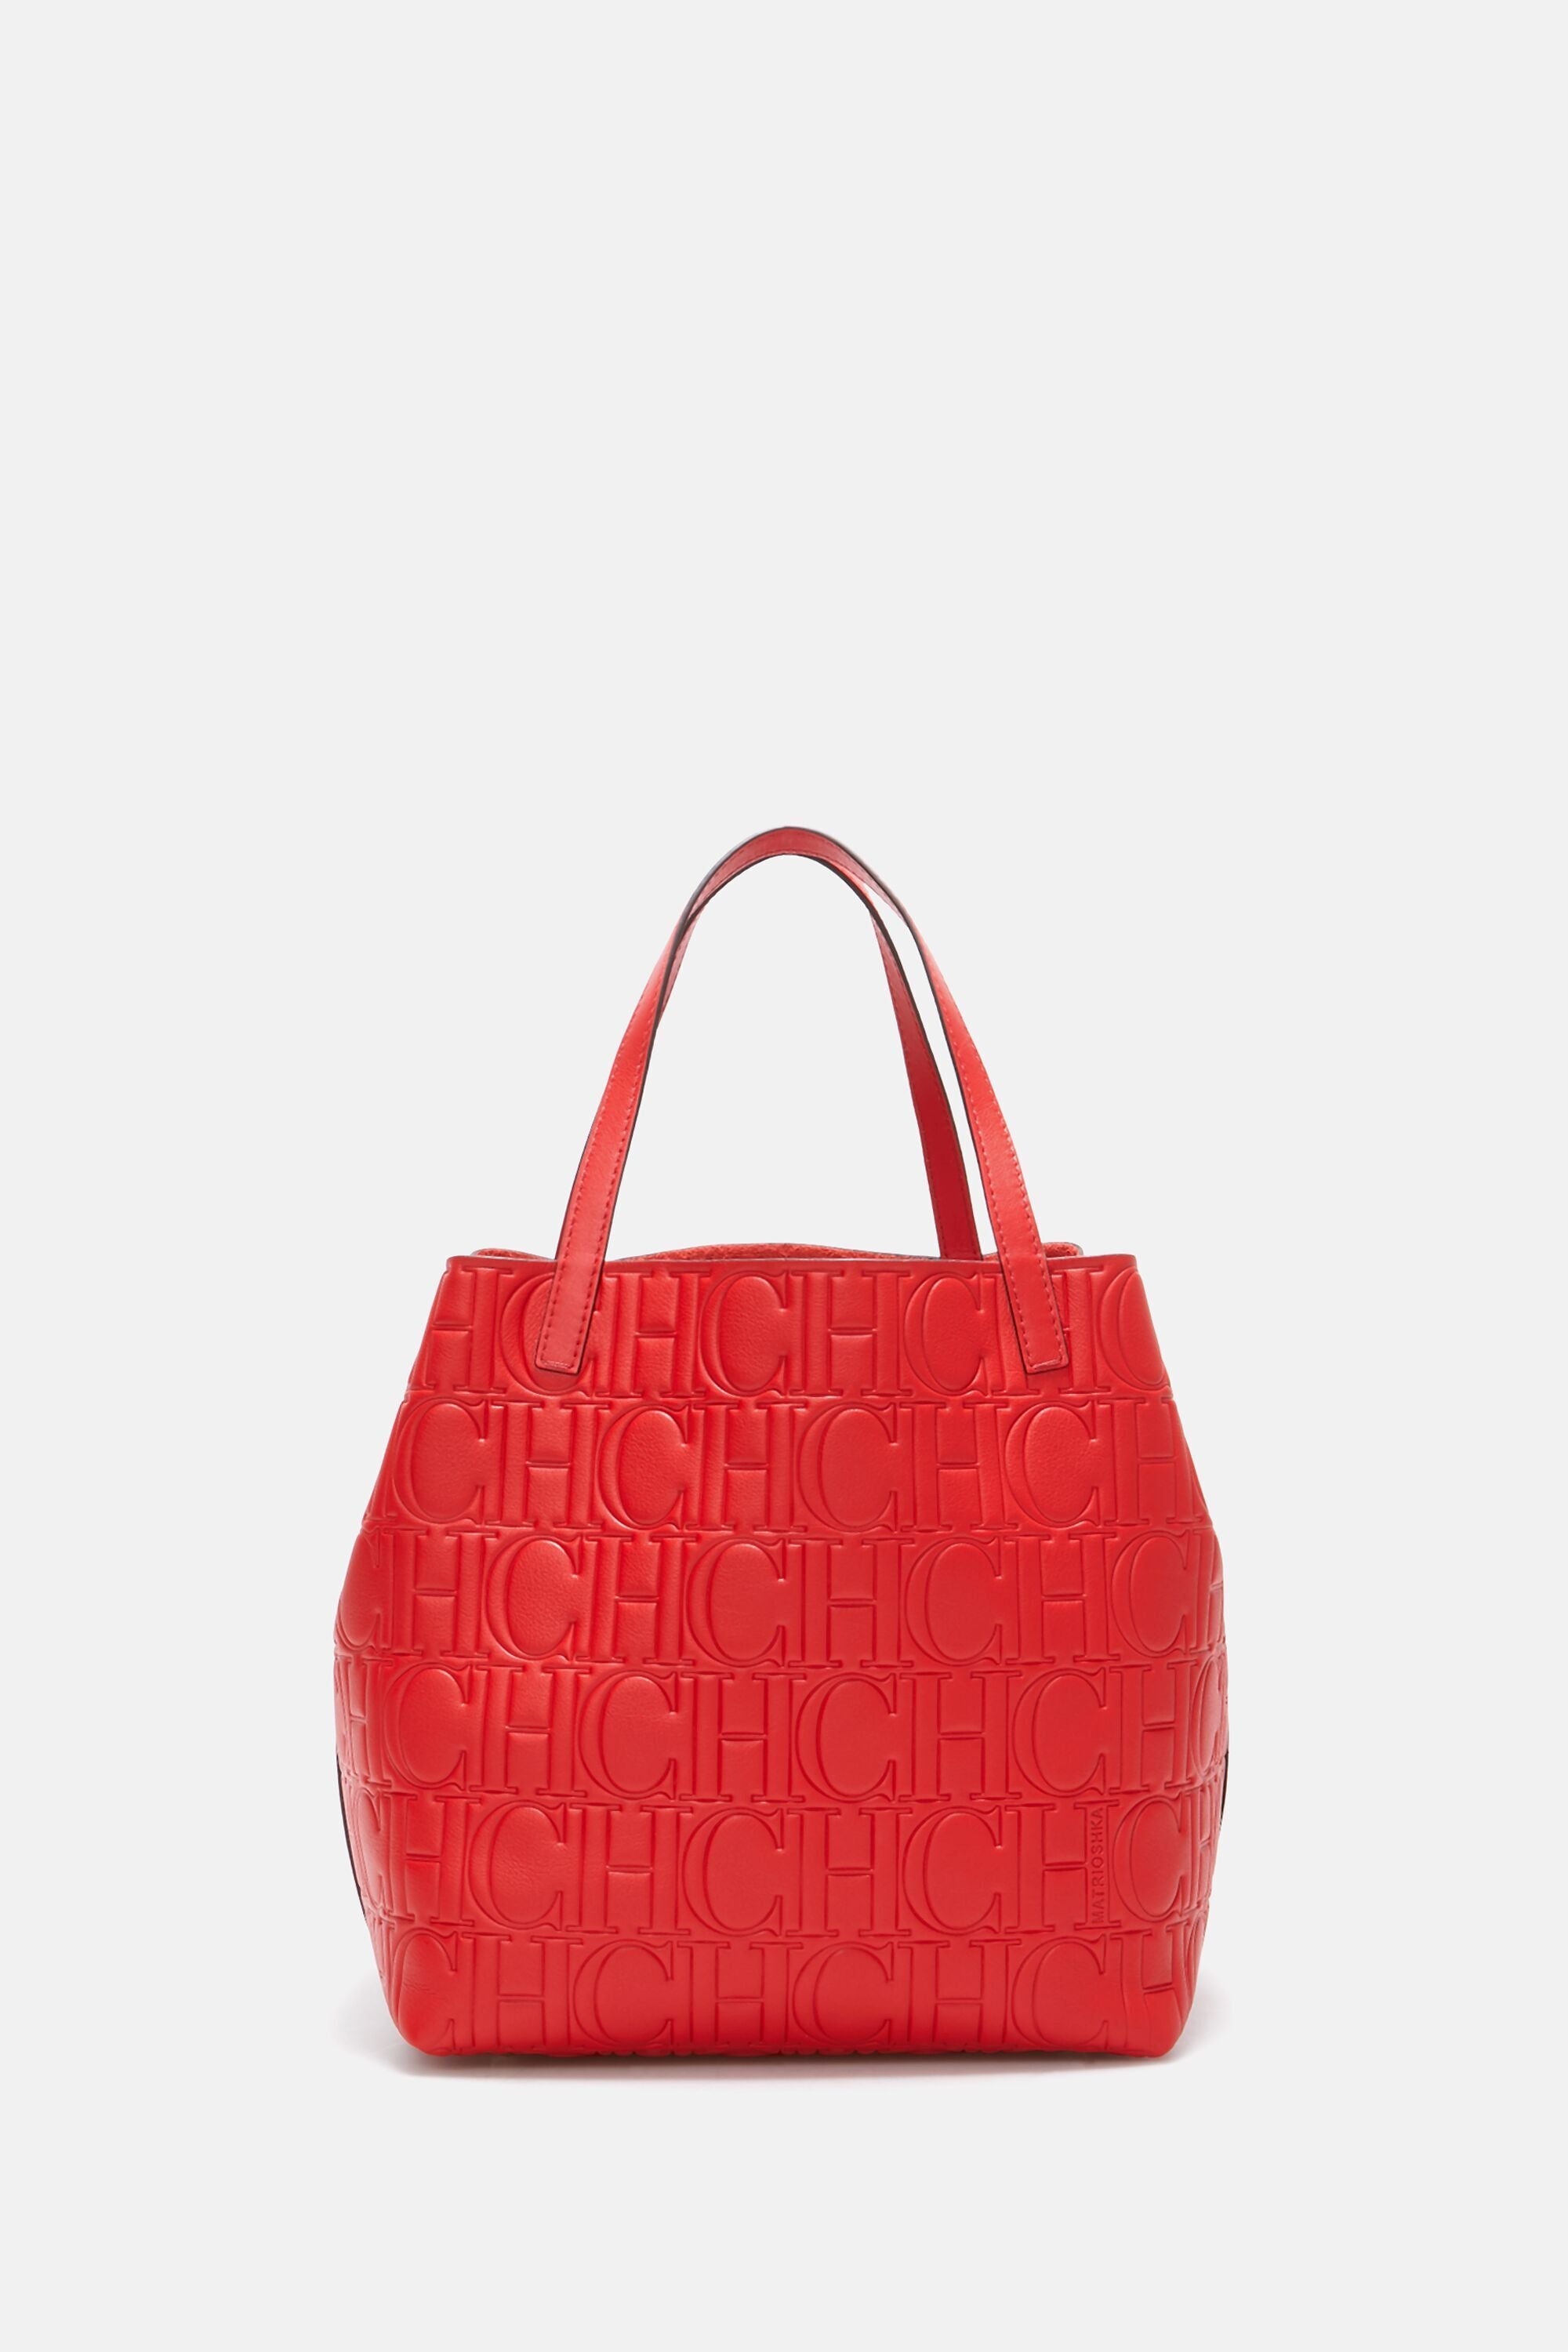 Matryoshka M | Medium handbag red - CH Carolina Herrera United States